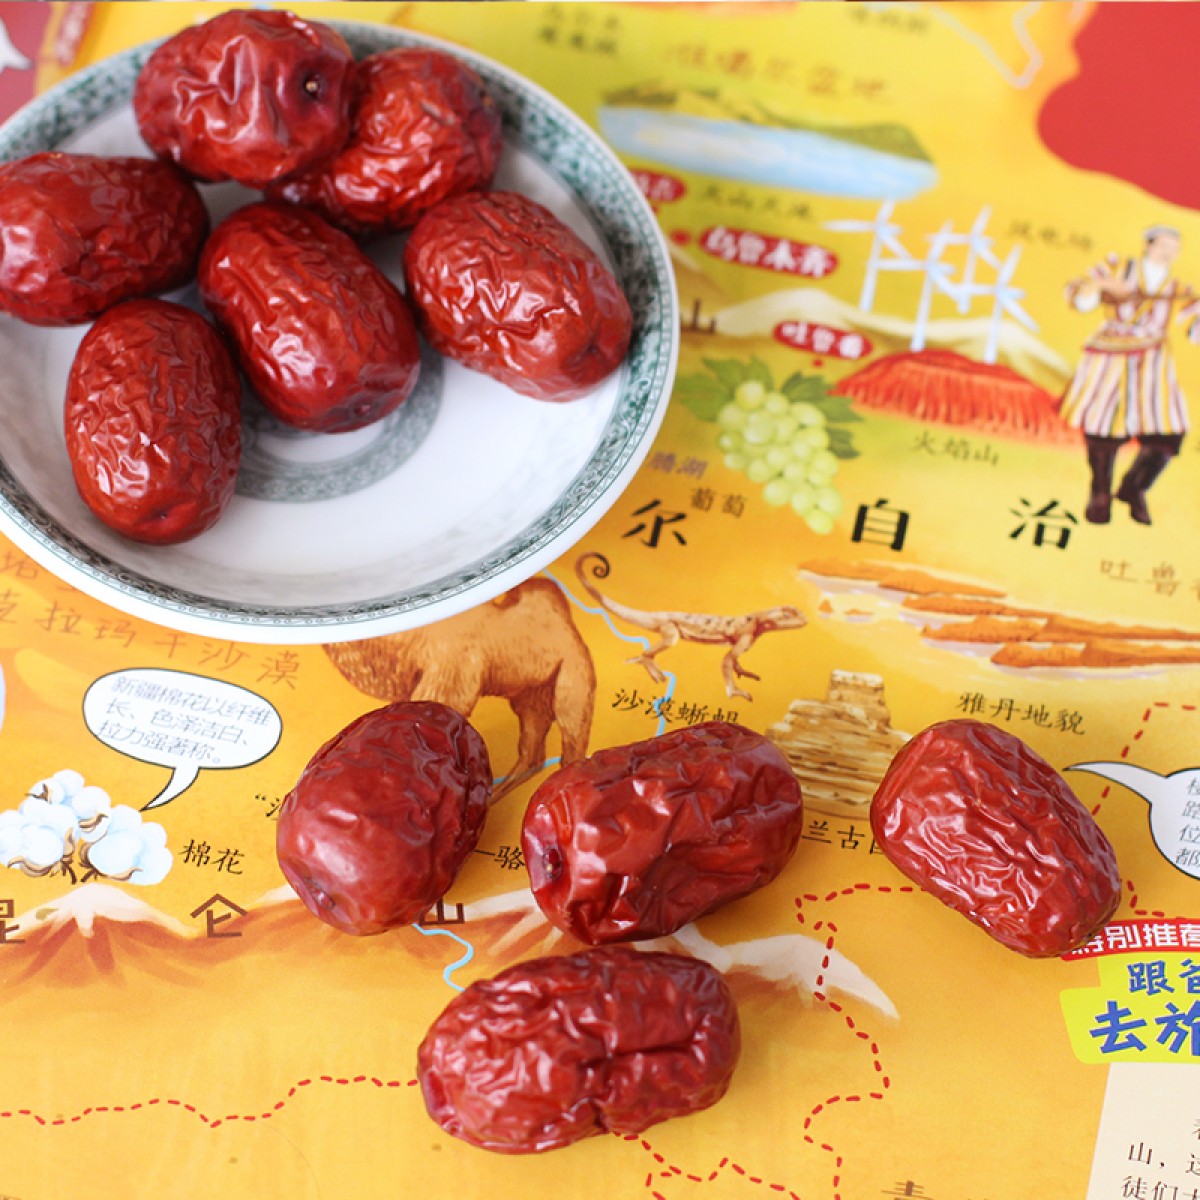 冰天优果新疆喀什有机红枣一级灰枣500g×2袋